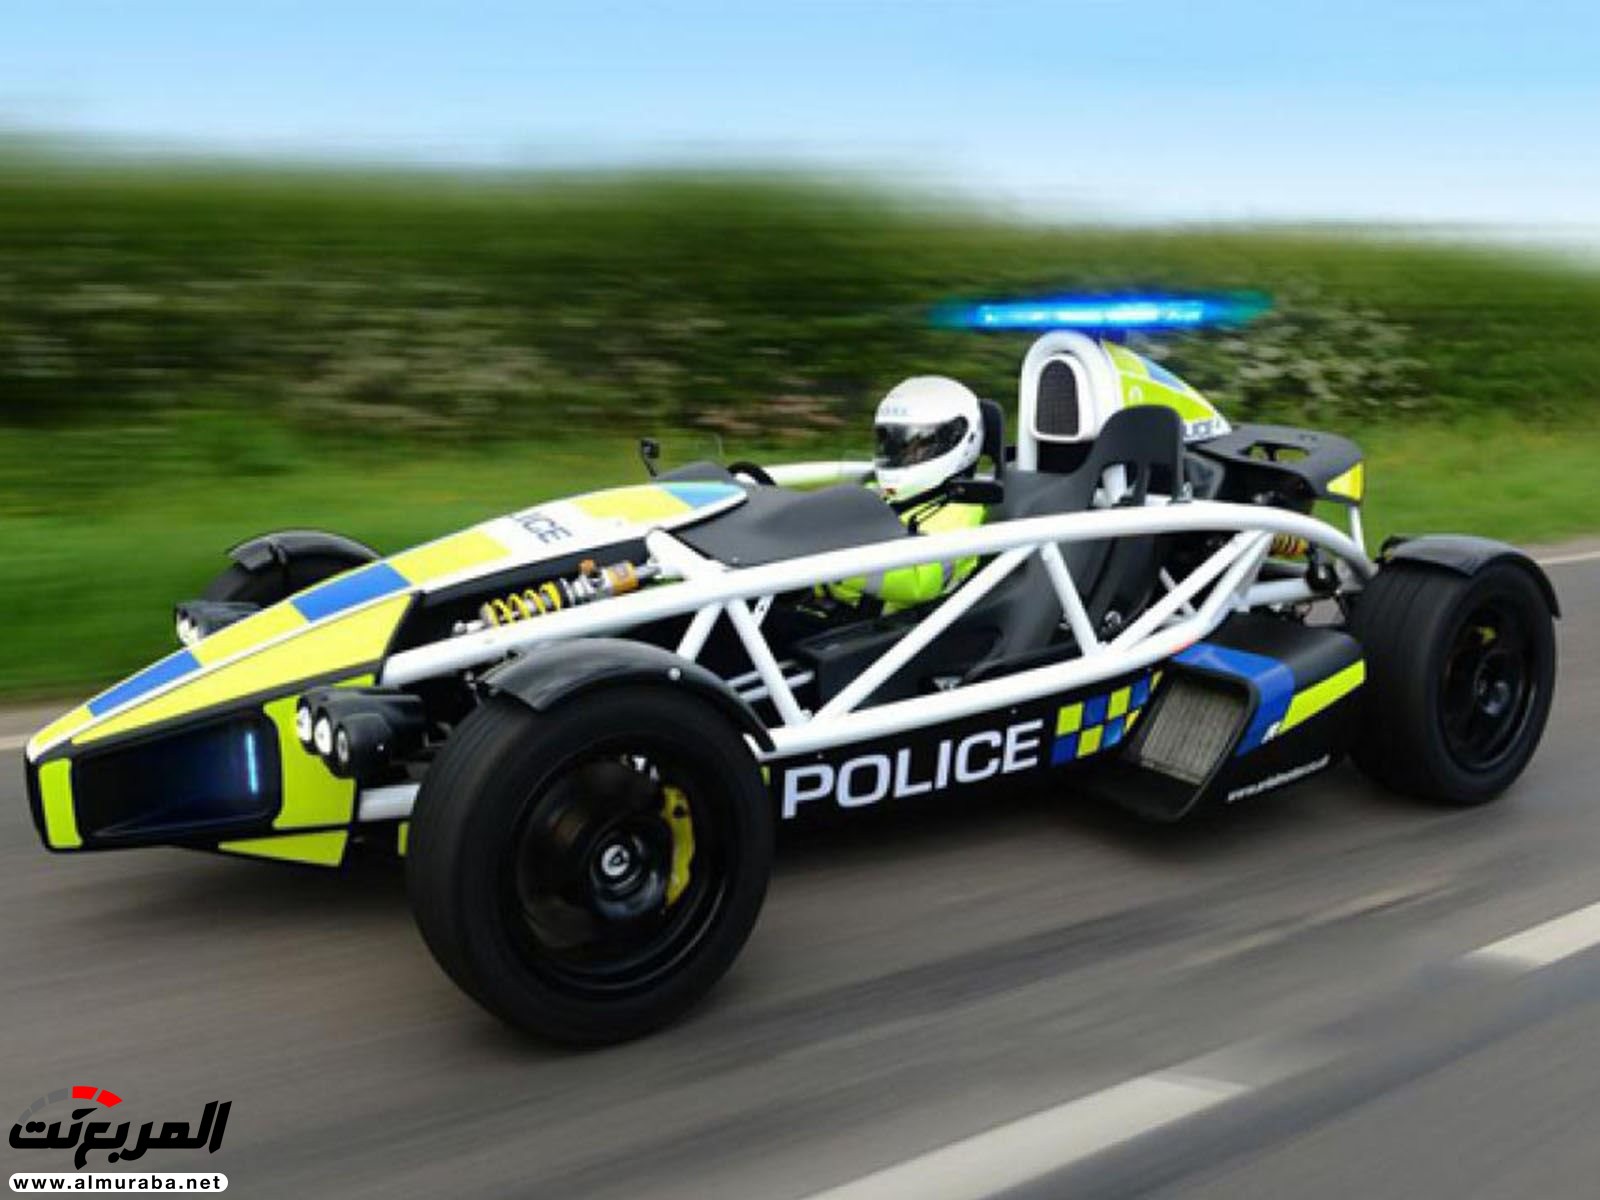 رئيس الشرطة البريطانية: تعدي السرعة القانونية بقدر 1 ميل نريد احتسابها "جريمة" 13